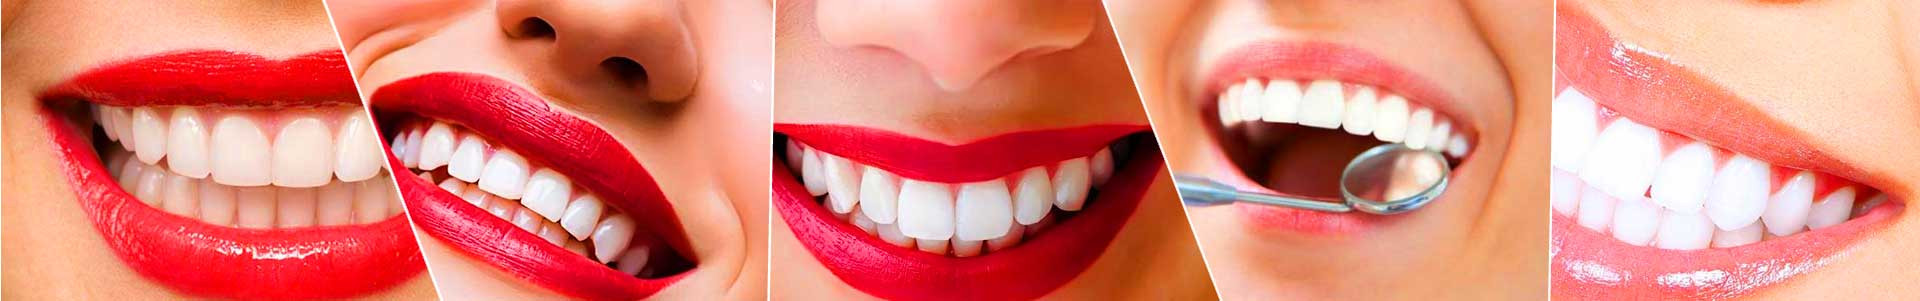 بهترین خرید کلینیک دندان پزشکی راد کرج با بیشترین درصد تخفیف در قیمت - 79%